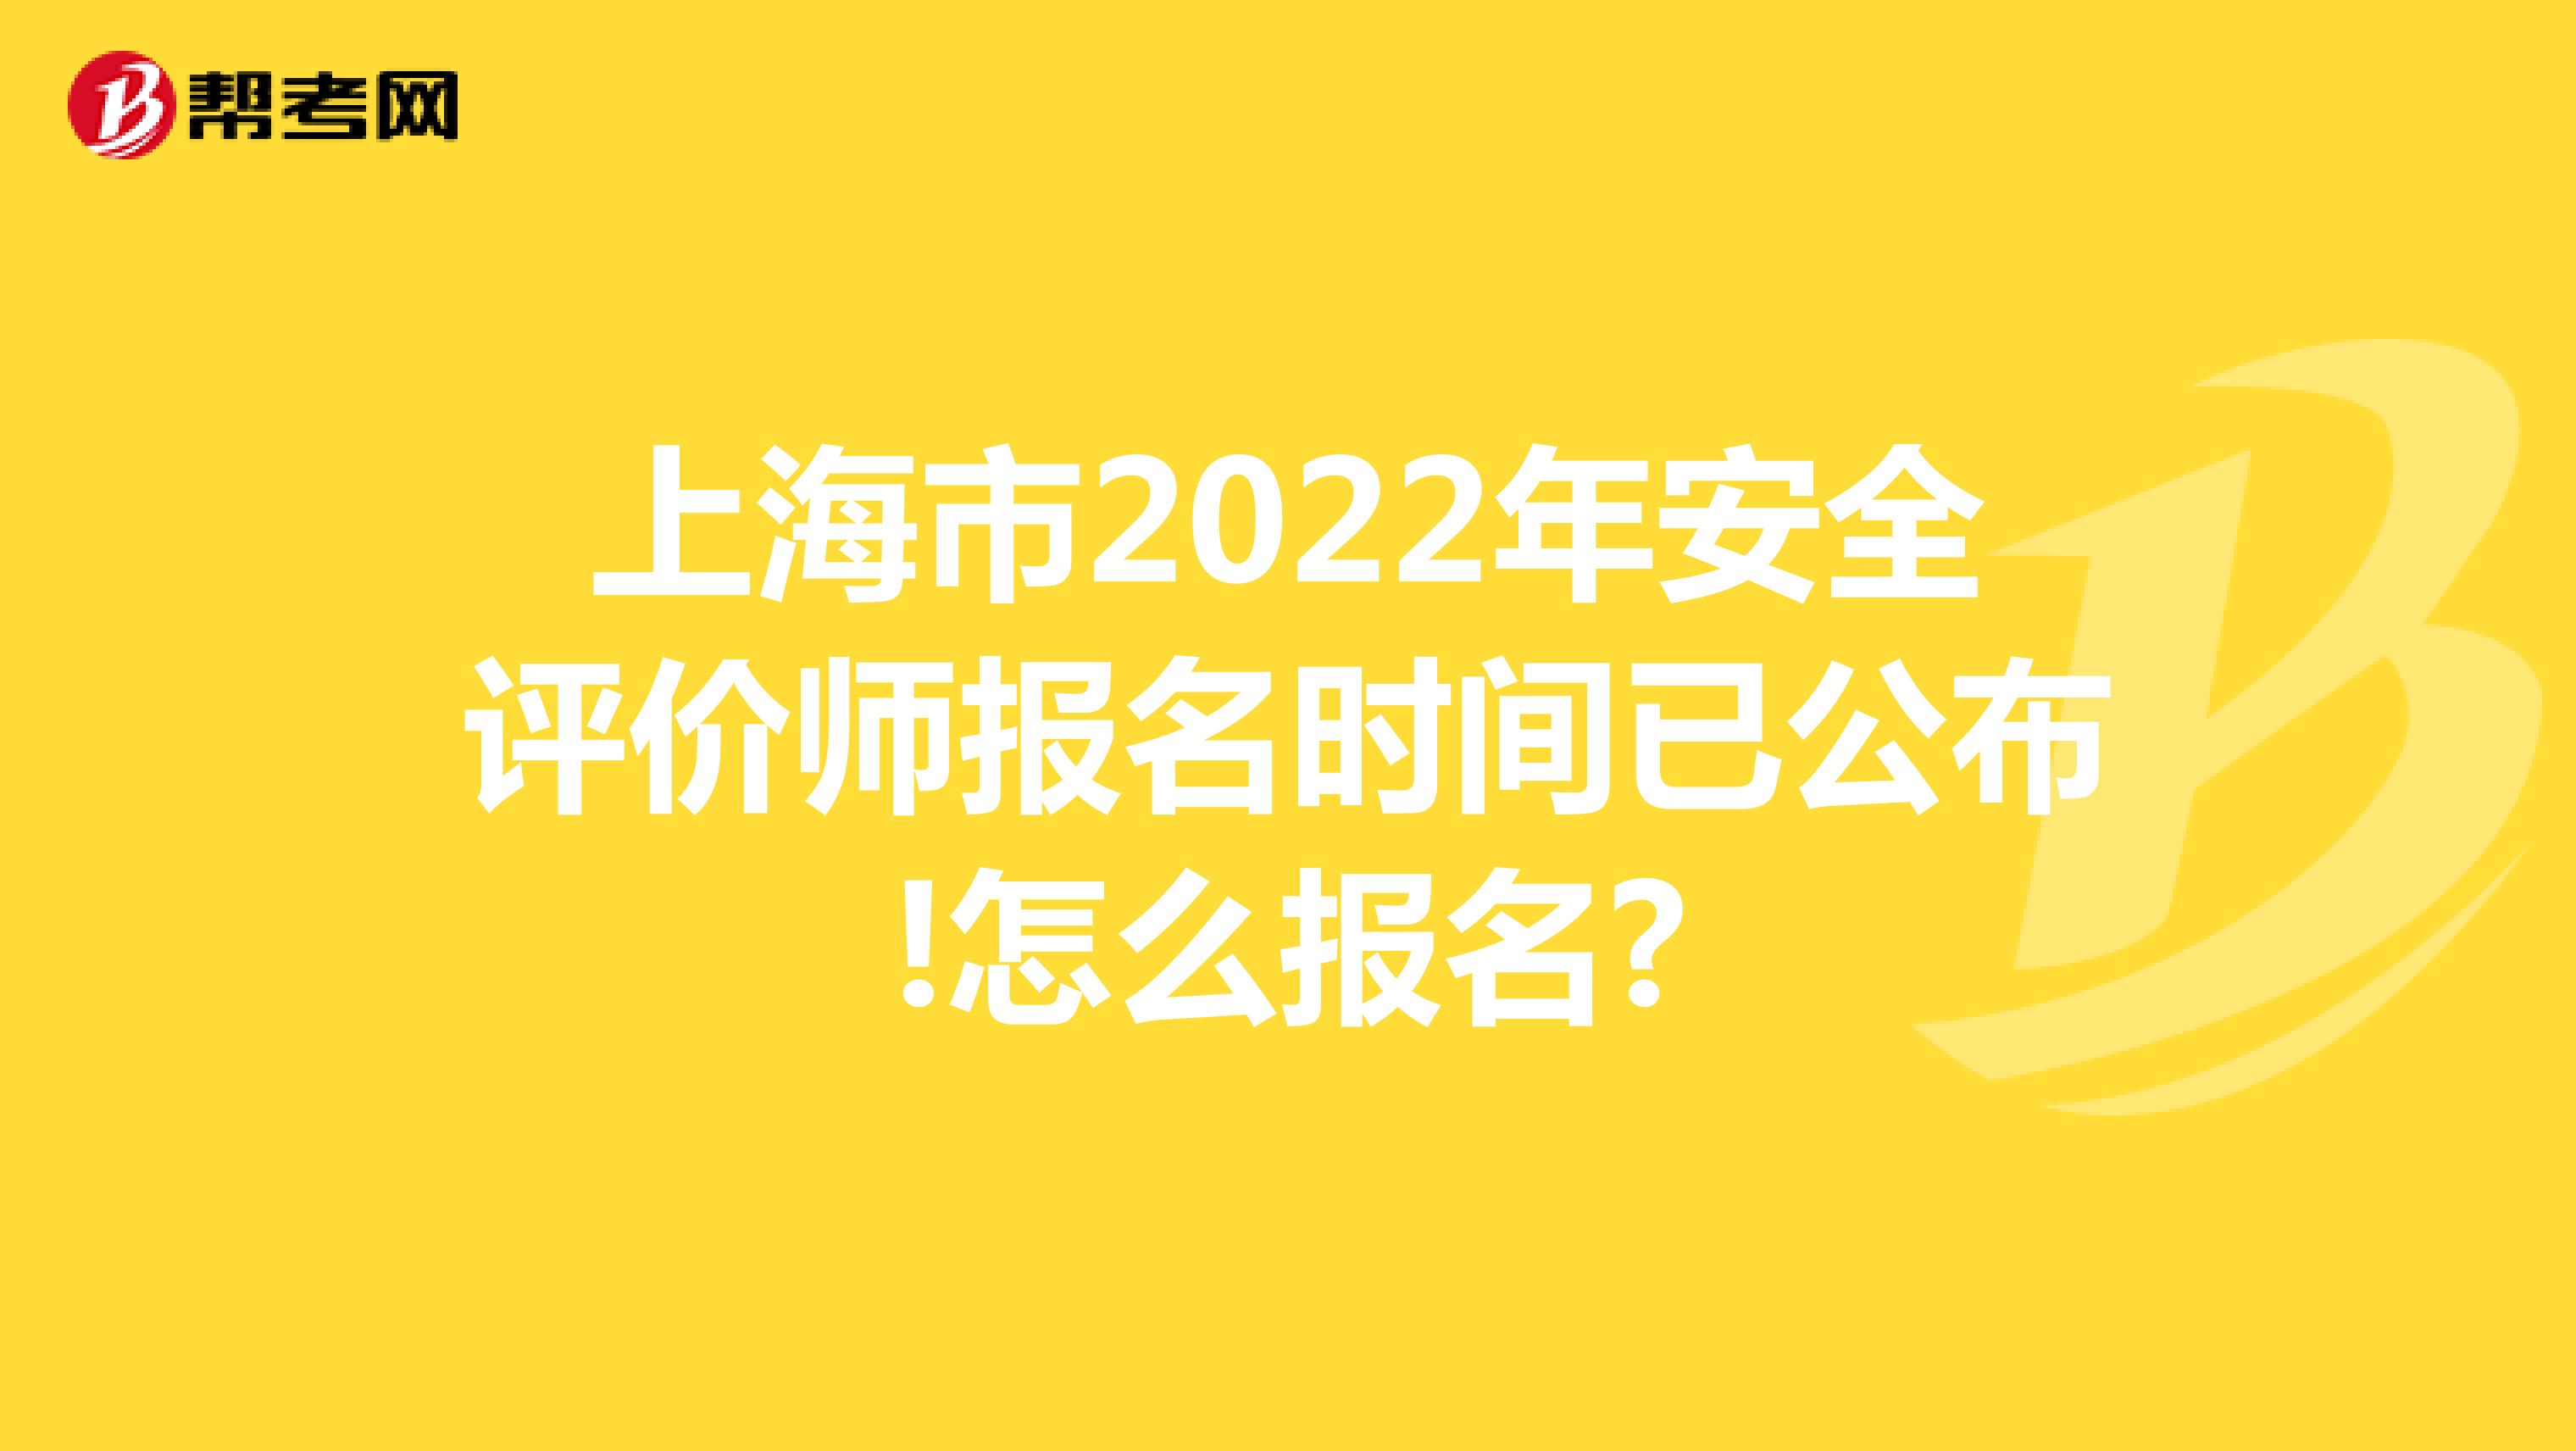 上海市2022年安全评价师报名时间已公布!怎么报名?